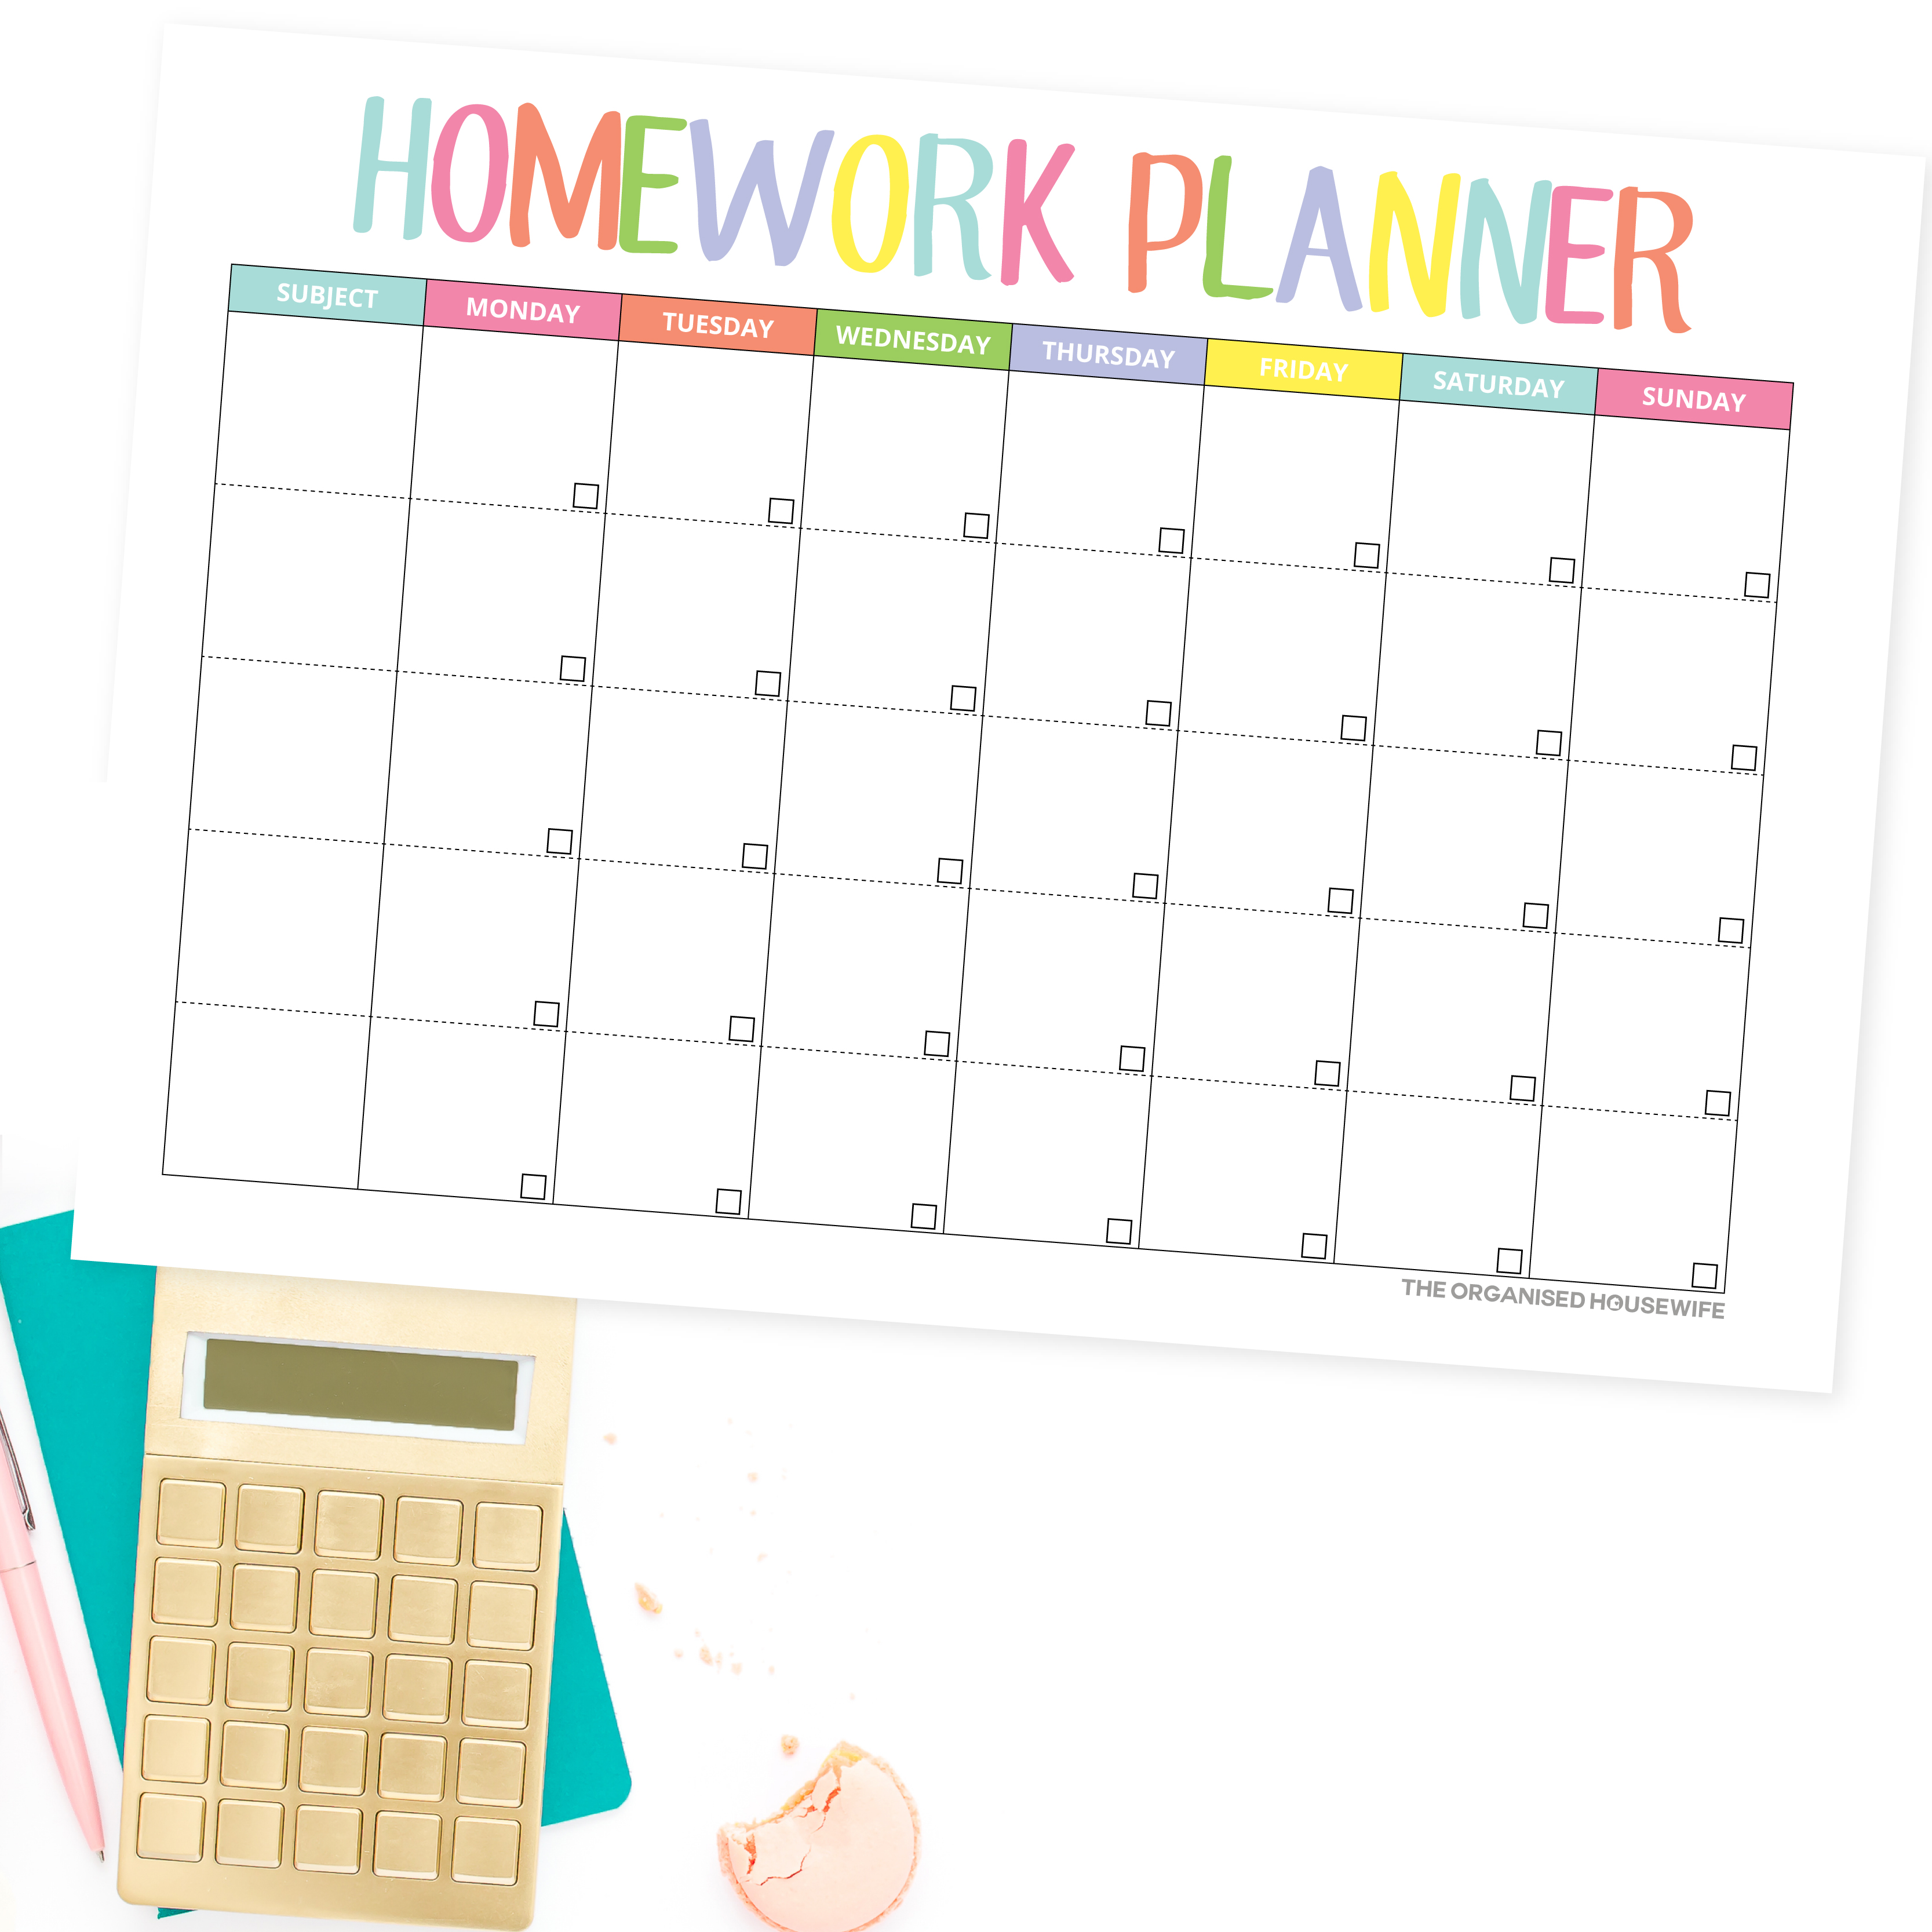 Homework planner for tween and teenage school children